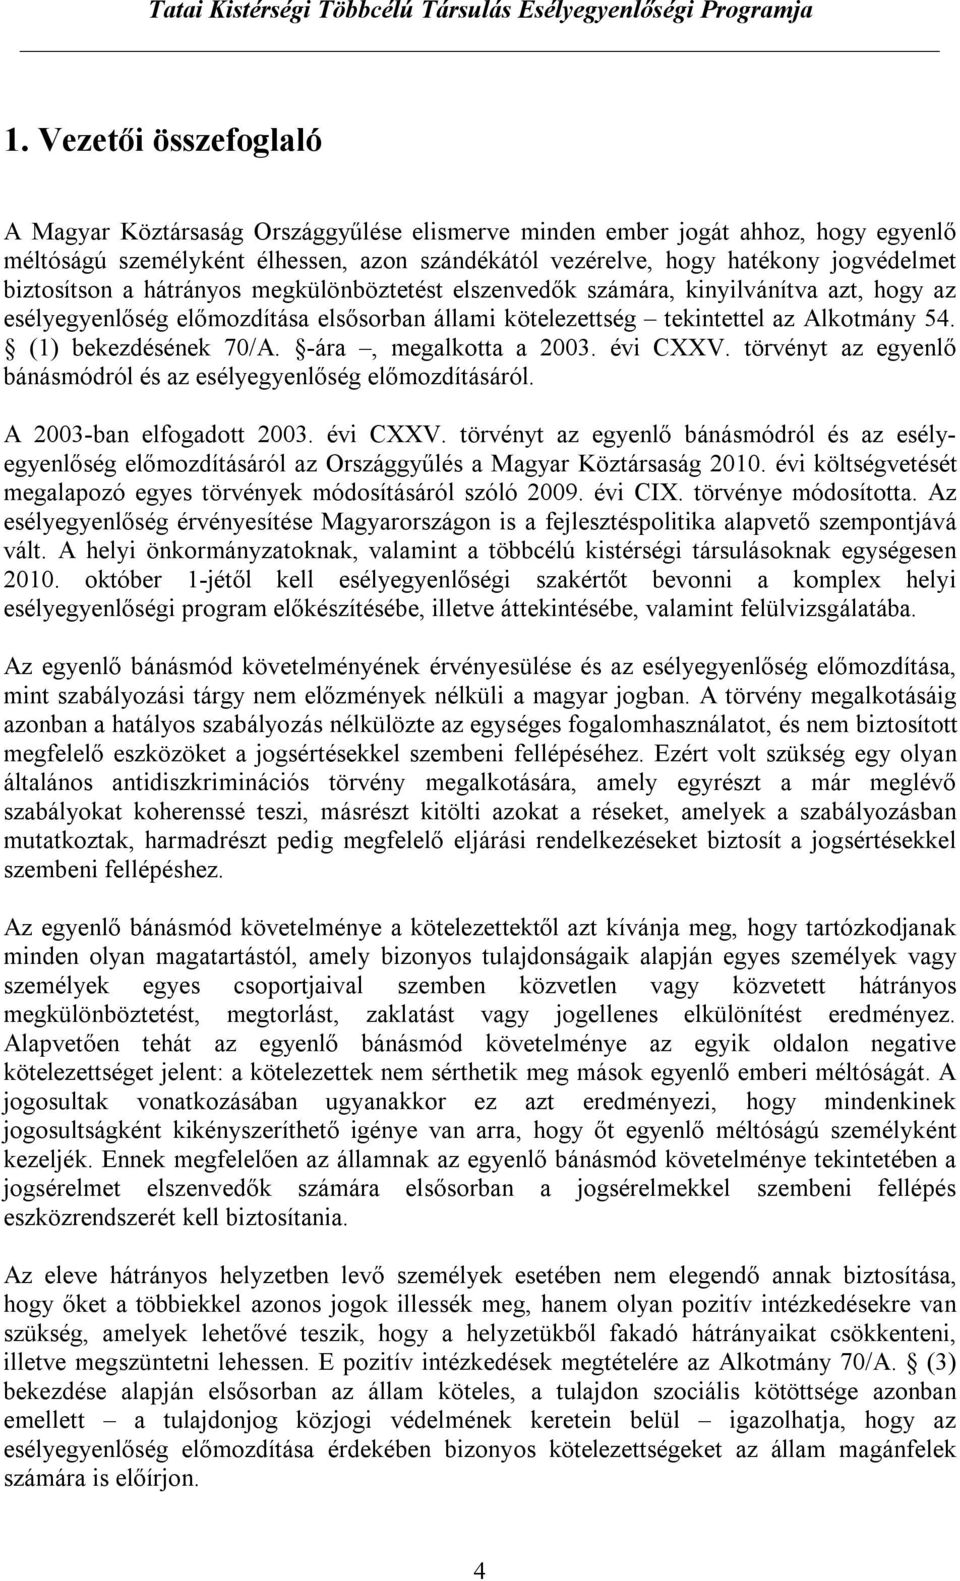 (1) bekezdésének 70/A. -ára, megalkotta a 2003. évi CXXV. törvényt az egyenlő bánásmódról és az esélyegyenlőség előmozdításáról. A 2003-ban elfogadott 2003. évi CXXV. törvényt az egyenlő bánásmódról és az esélyegyenlőség előmozdításáról az Országgyűlés a Magyar Köztársaság 2010.